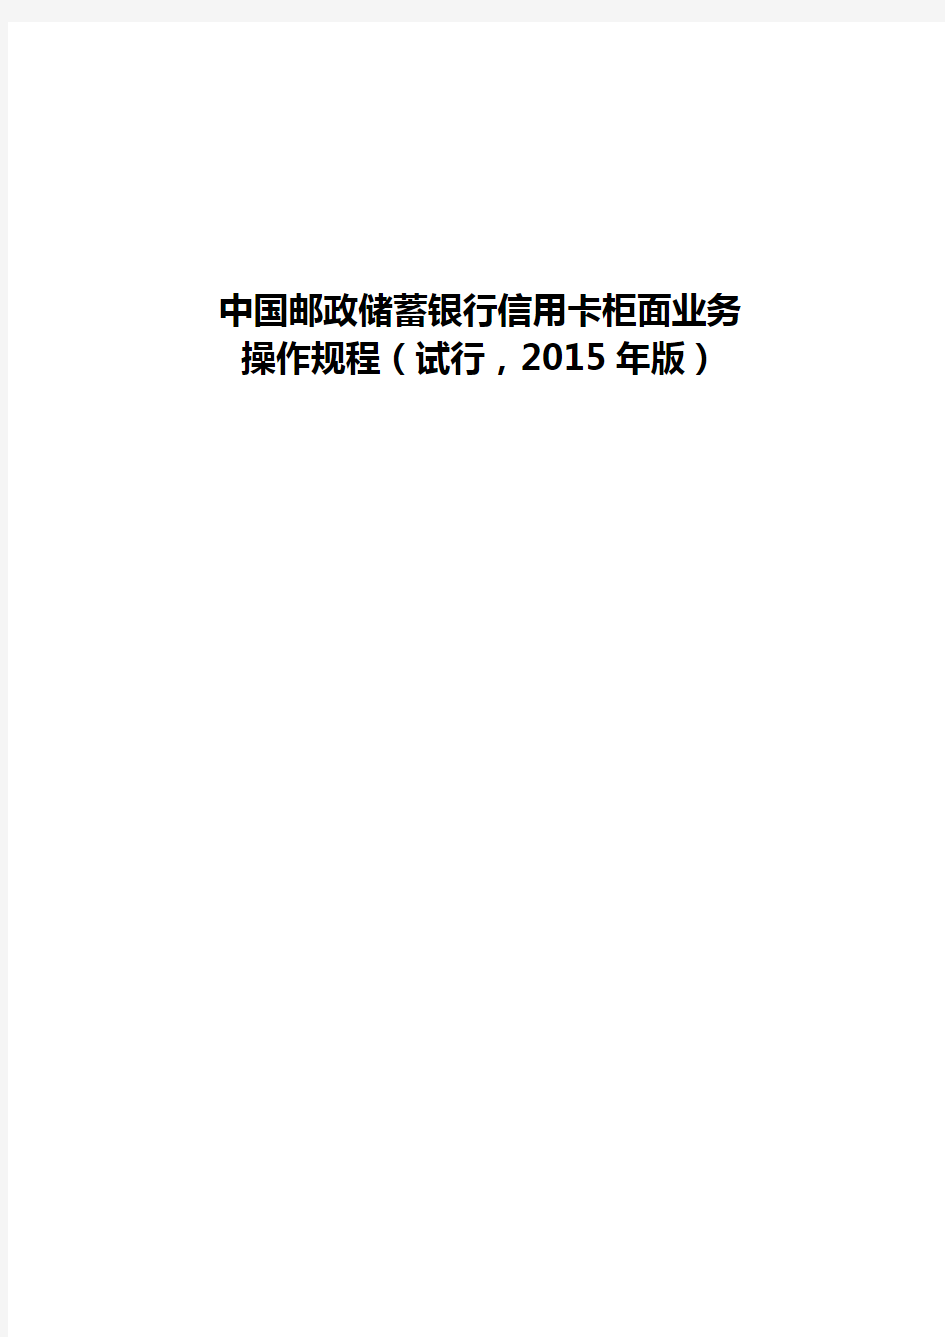 中国邮政储蓄银行信用卡柜面业务操作规程(2015年版)分解